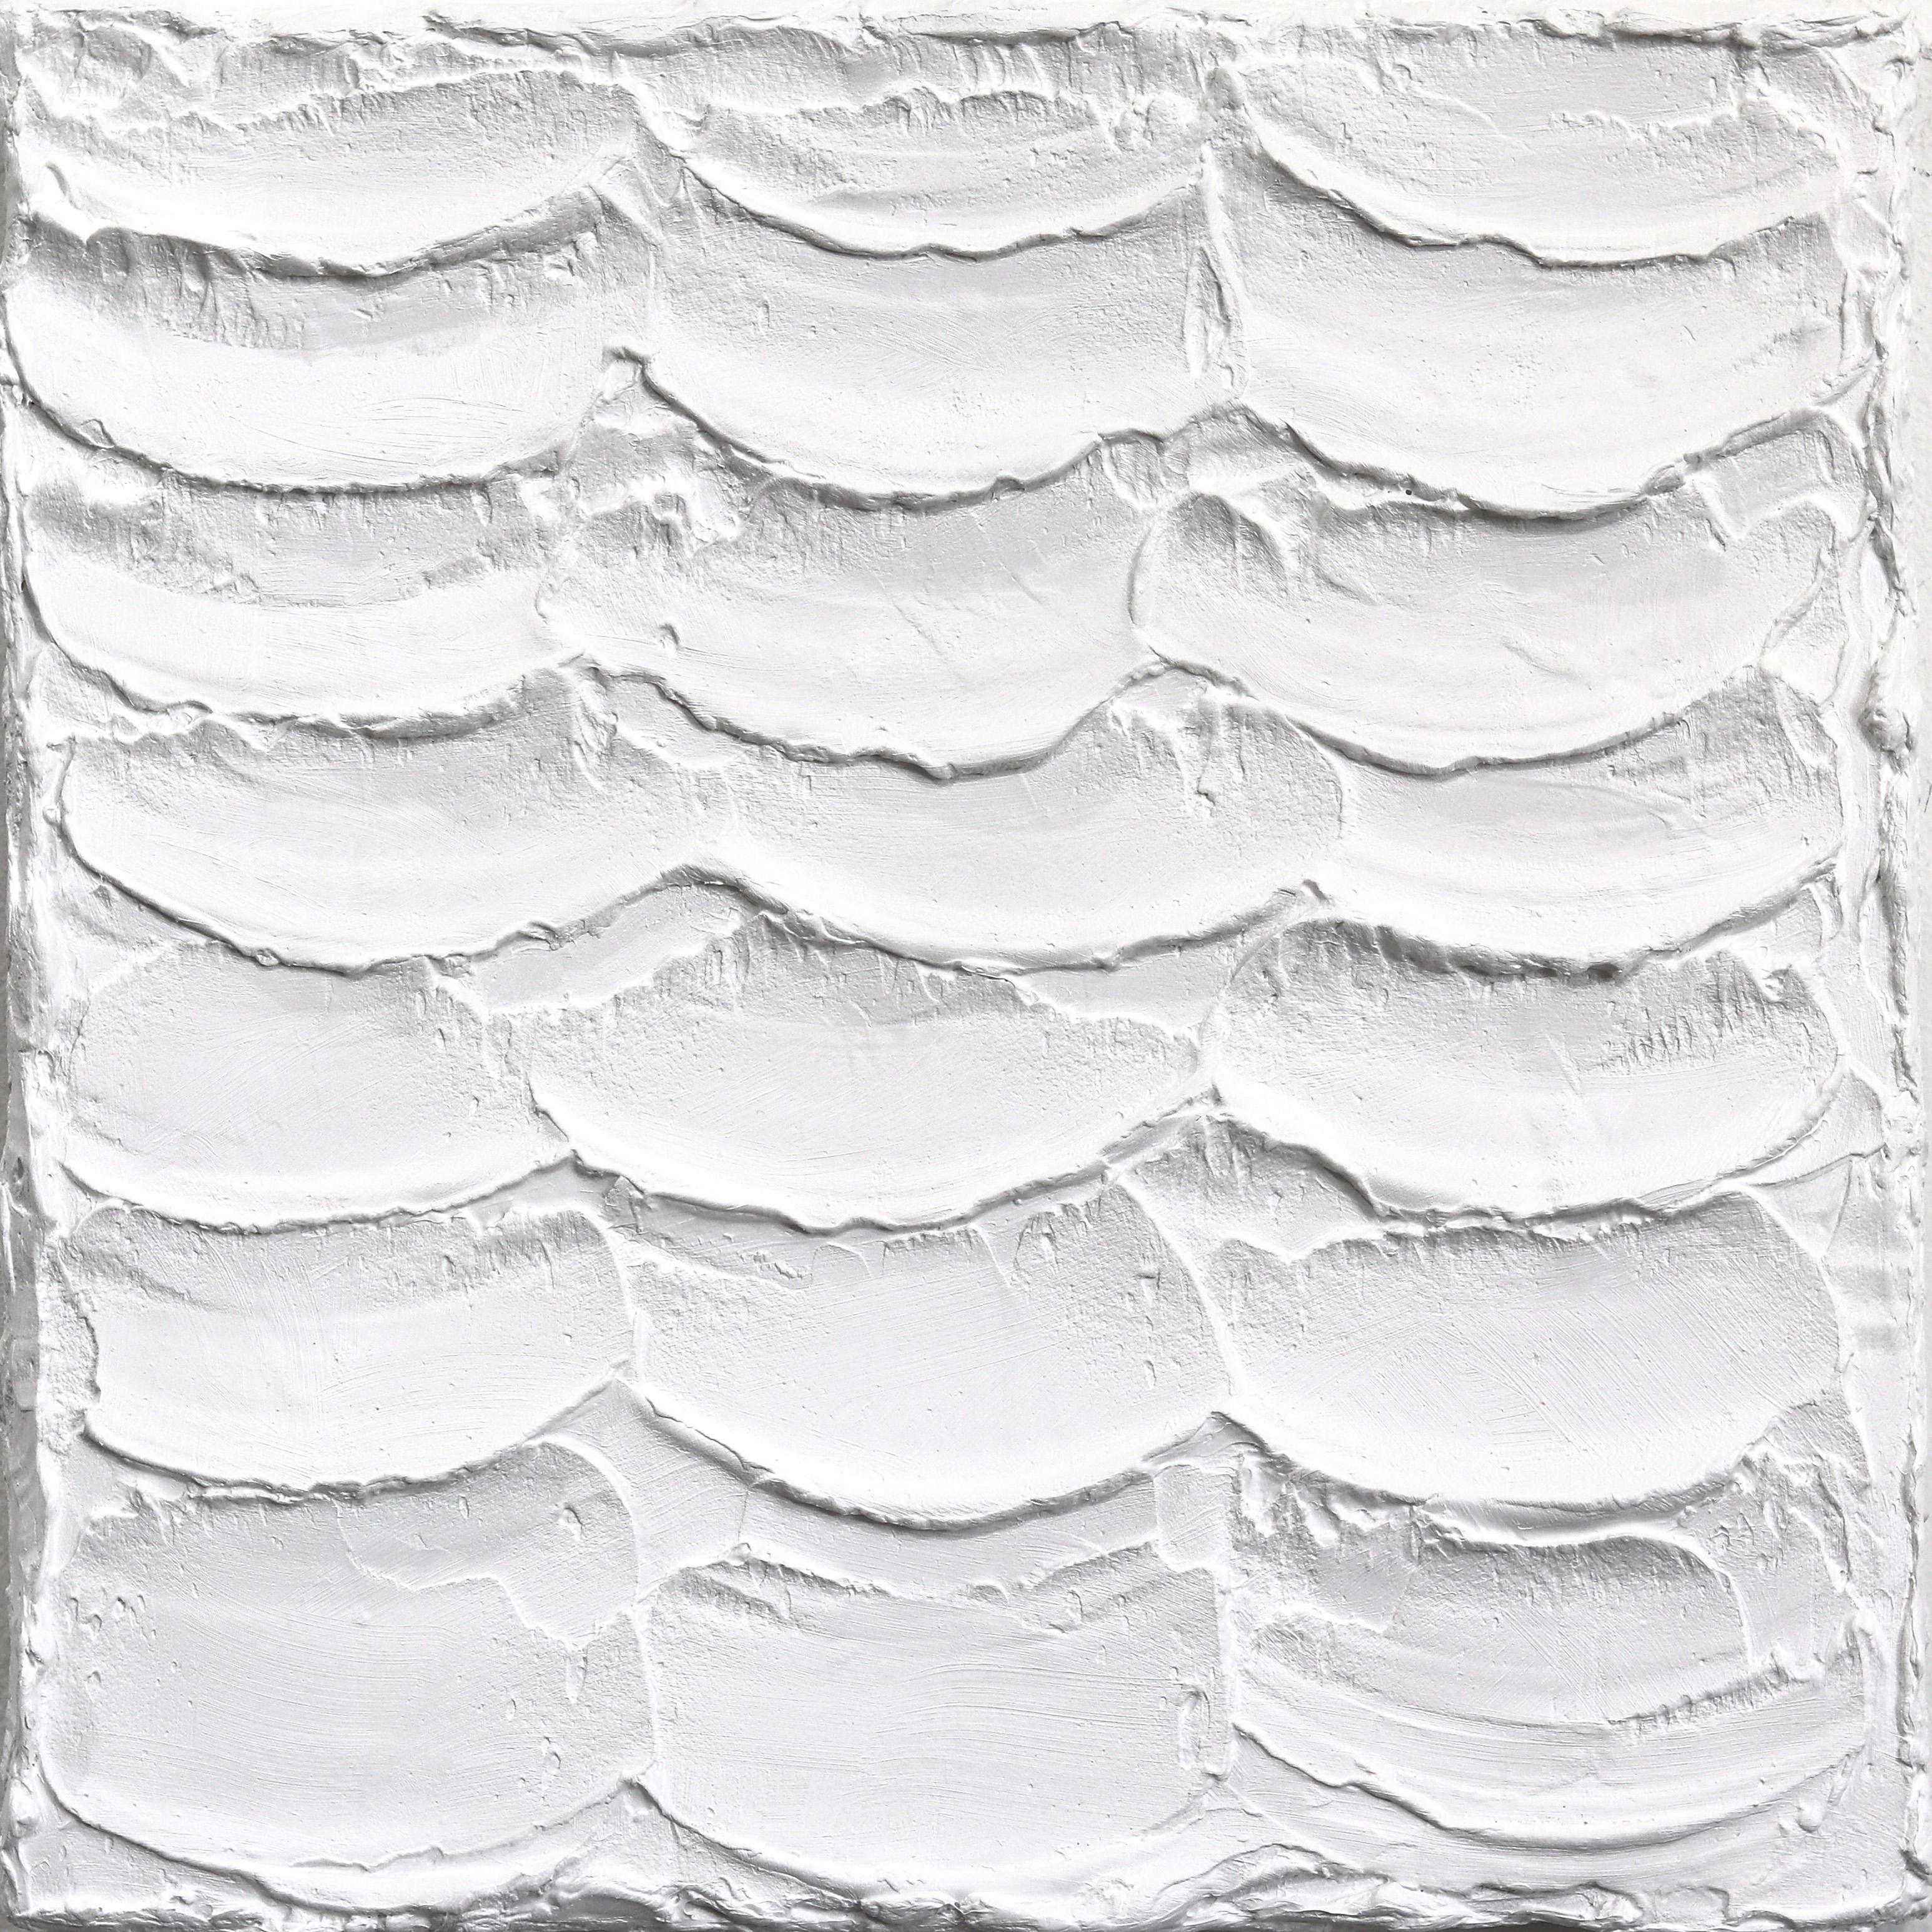 Éléments froissés n° 3 - Œuvre d'art sculpturale minimaliste et texturée blanche sur toile